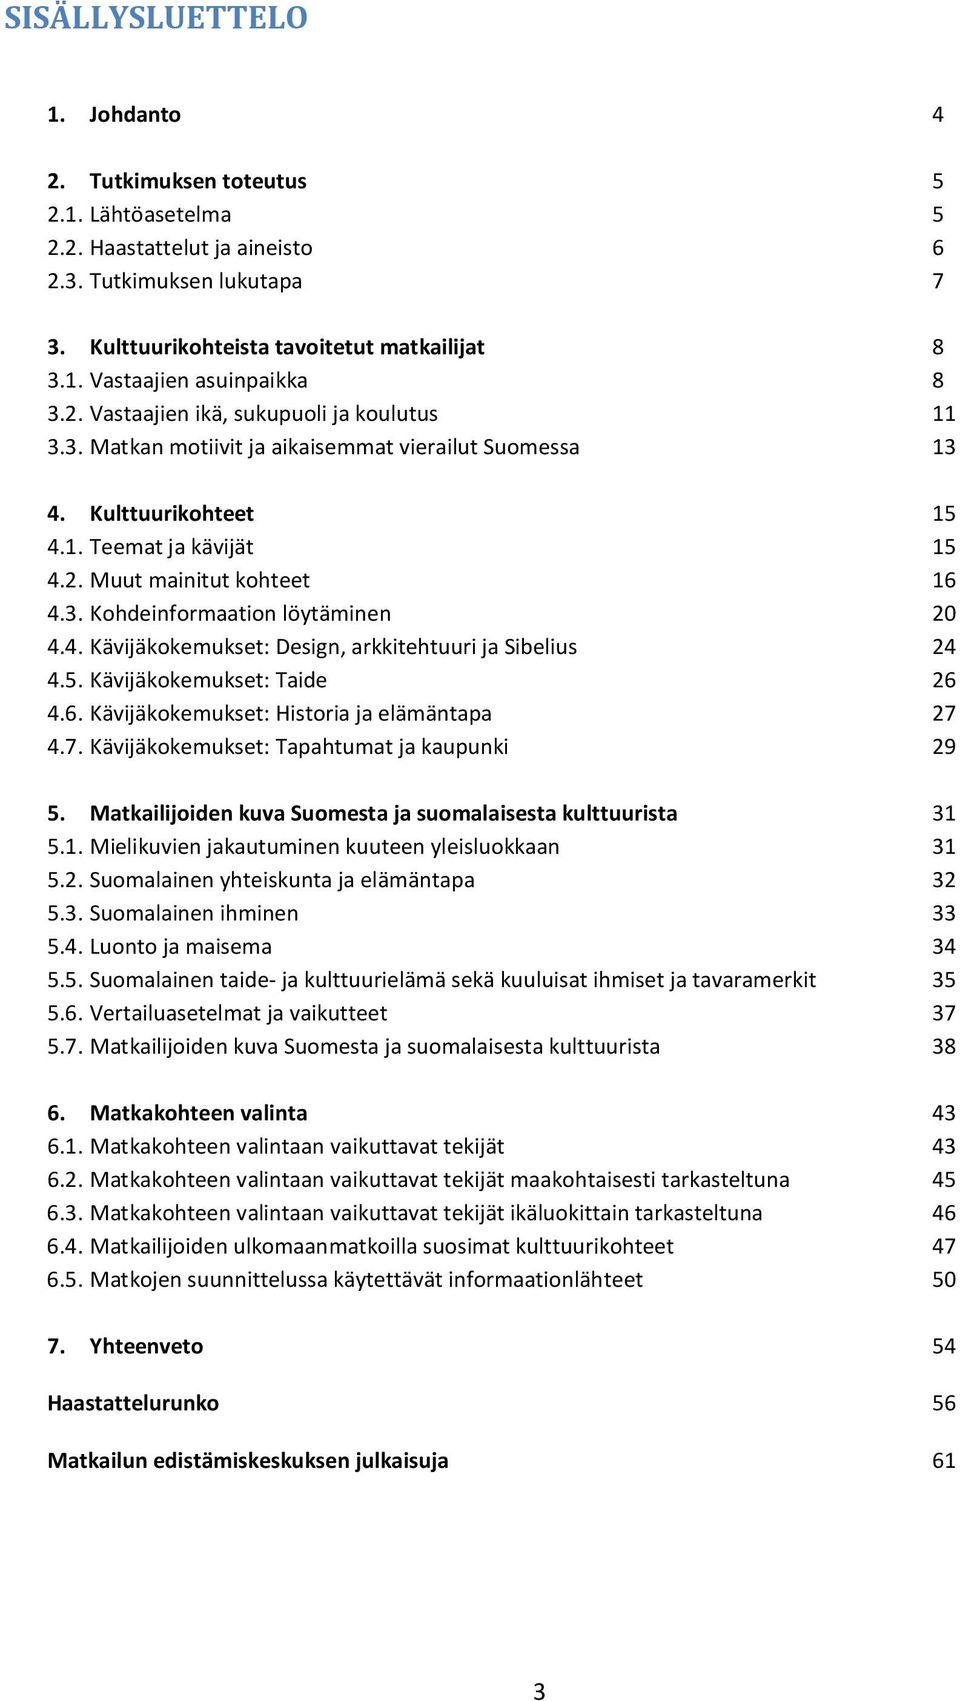 4. Kävijäkokemukset: Design, arkkitehtuuri ja Sibelius 24 4.5. Kävijäkokemukset: Taide 26 4.6. Kävijäkokemukset: Historia ja elämäntapa 27 4.7. Kävijäkokemukset: Tapahtumat ja kaupunki 29 5.